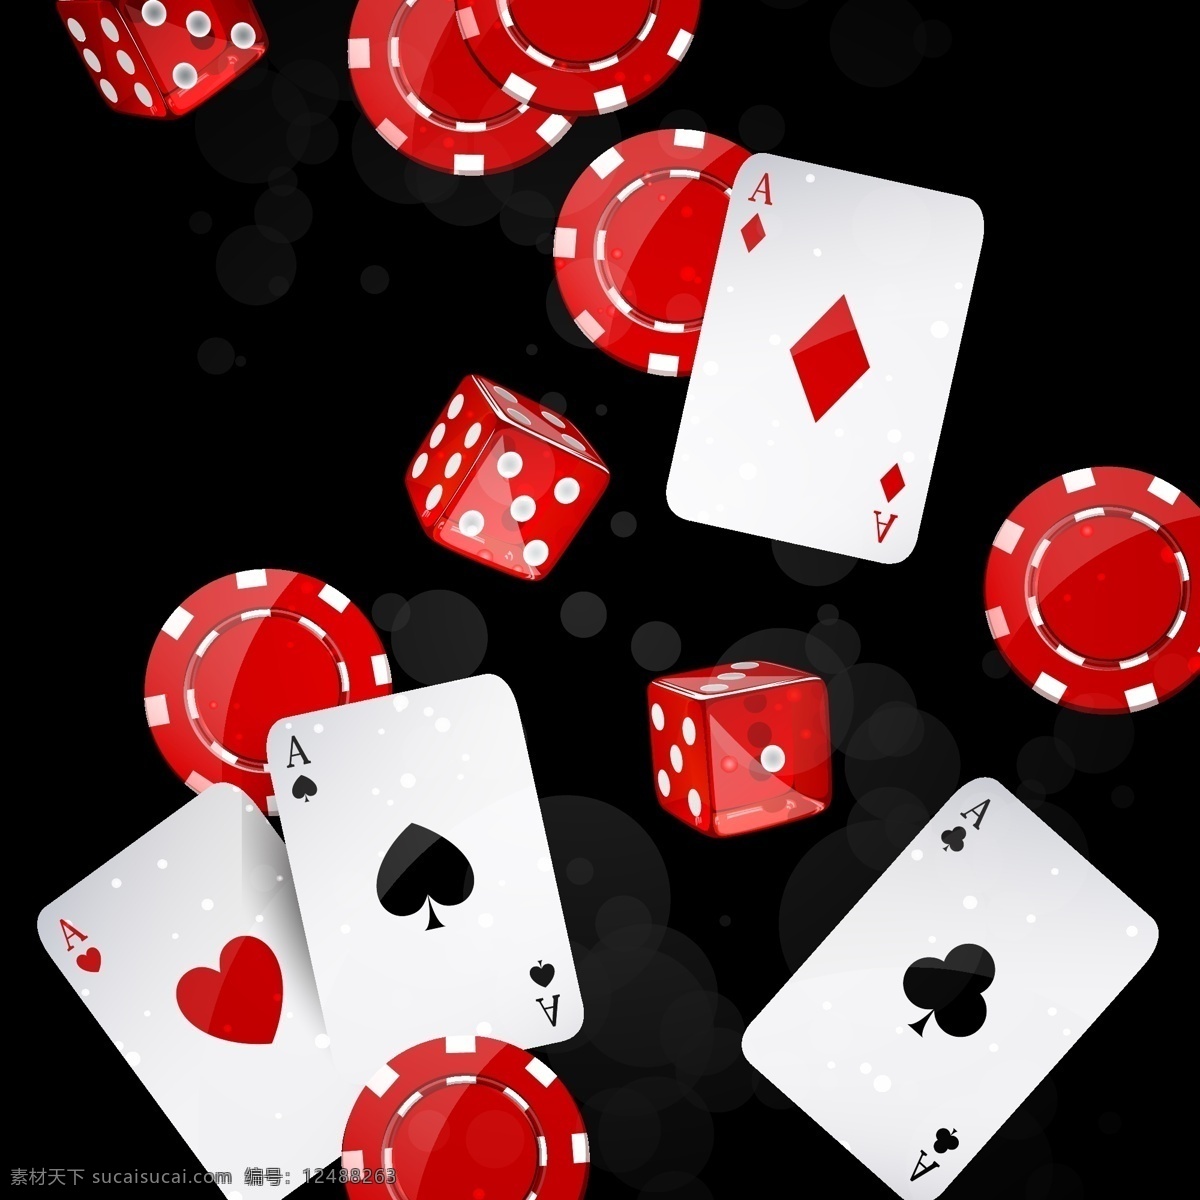 扑克和筛子 扑克 筛子 赌博